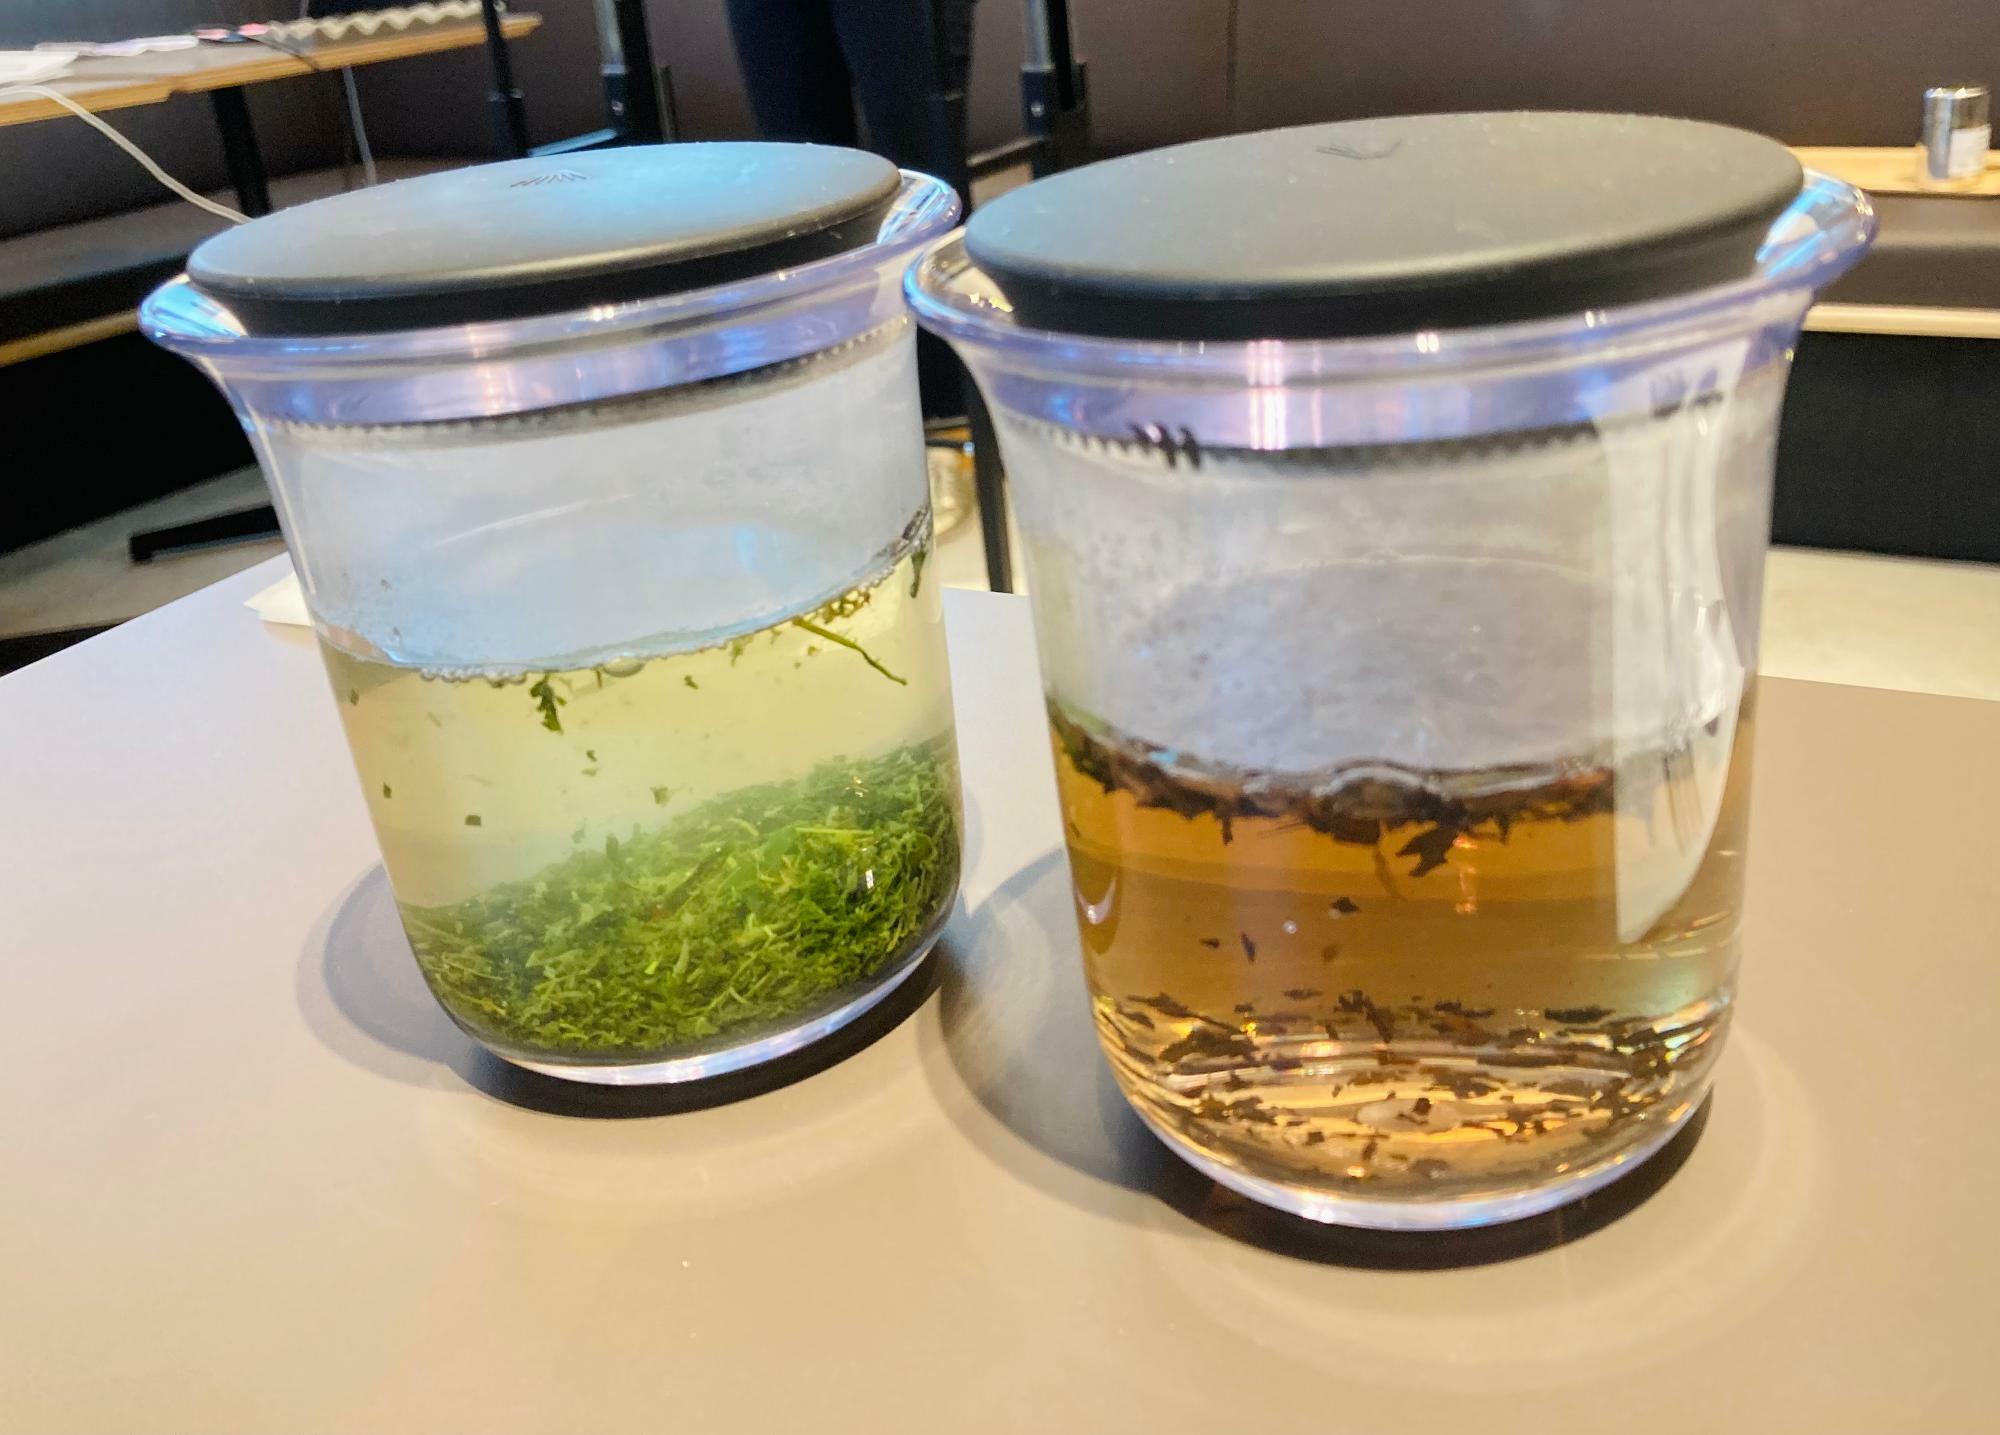 茶葉を入れてお湯を注いだ状態。左は普通煎茶、右はほうじ茶。どちらも静岡県藤枝産のオーガニックのものだそう。ふたのギザギザのスリットが茶こしの役割をしています。